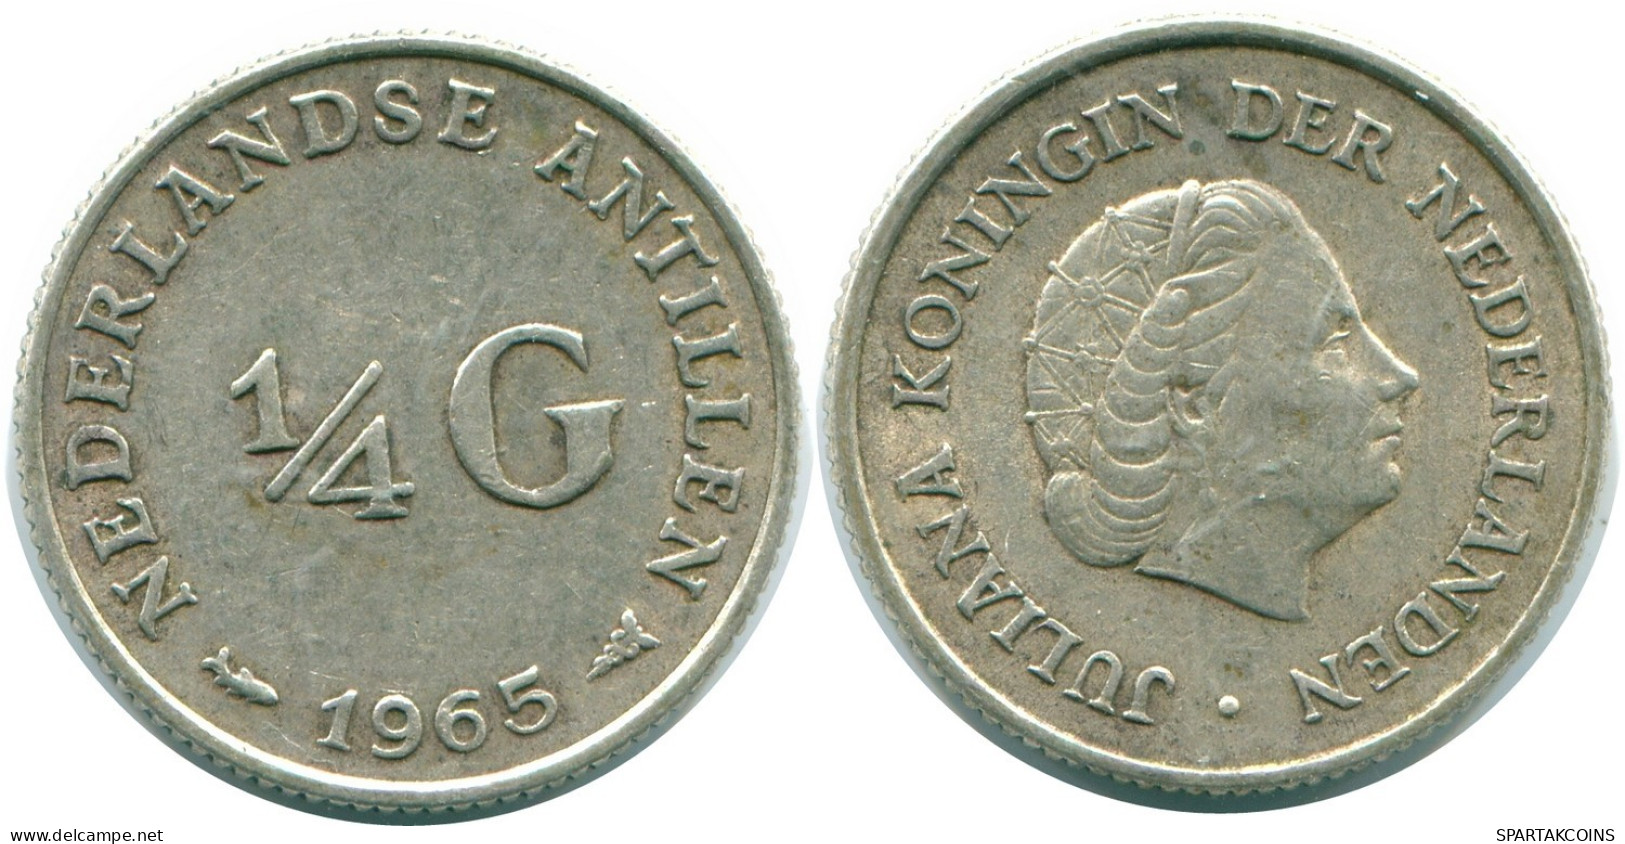 1/4 GULDEN 1965 NIEDERLÄNDISCHE ANTILLEN SILBER Koloniale Münze #NL11331.4.D.A - Antilles Néerlandaises